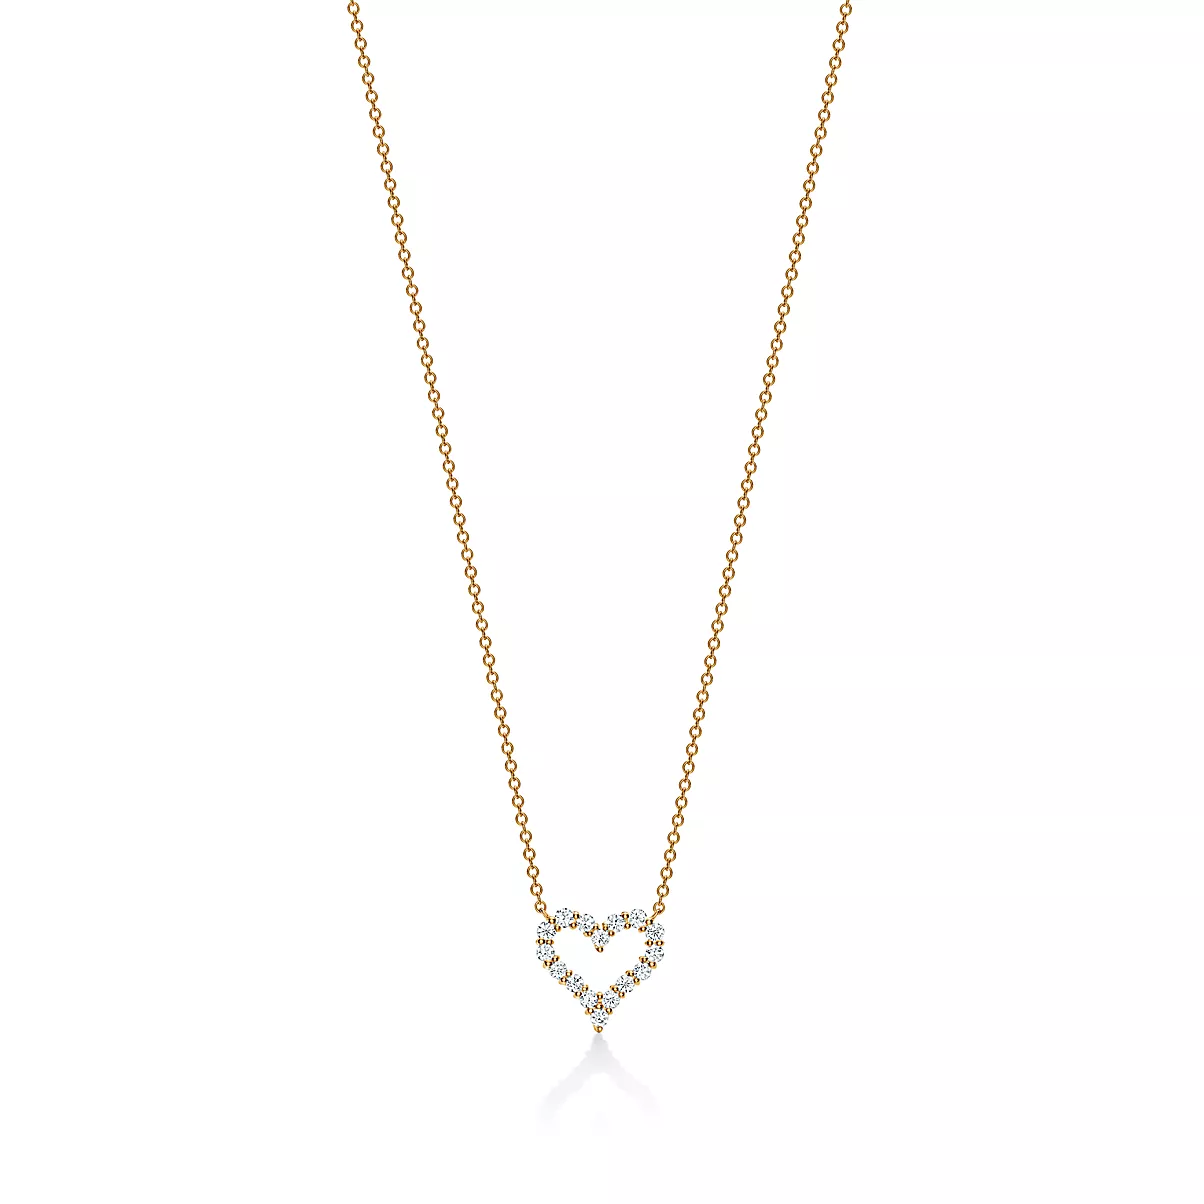 Tiffany Hearts Pendant w/Chain 18K 옐로우 골드 라운드 브릴리언트 다이아몬드 One Scale